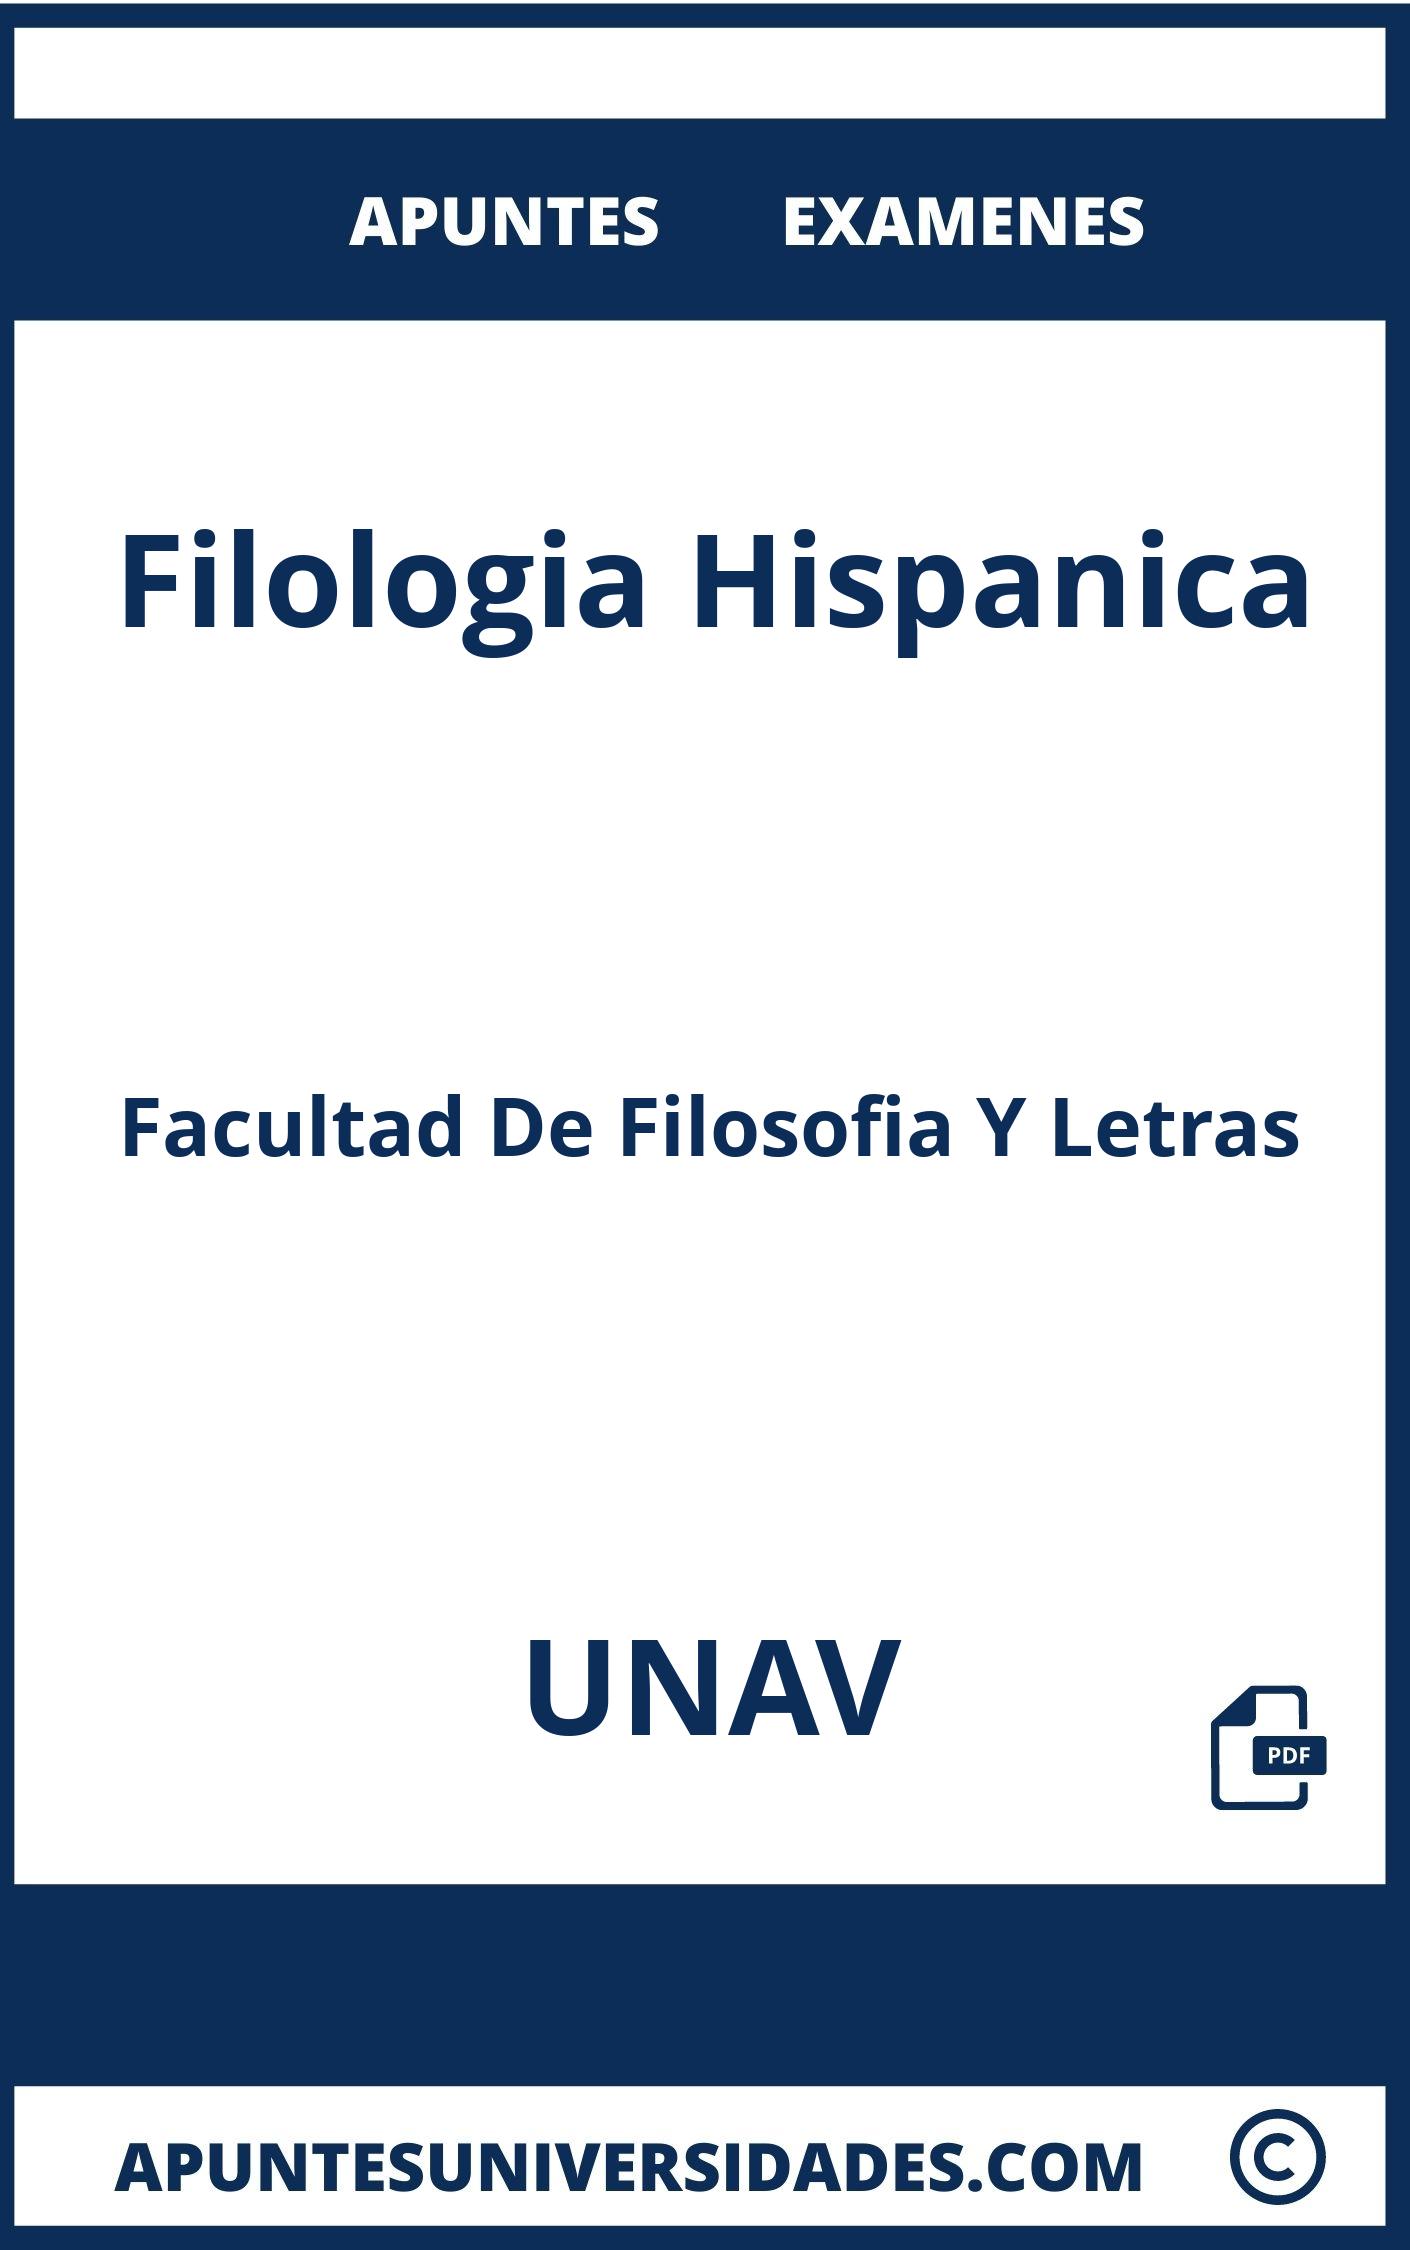 Apuntes Filologia Hispanica UNAV y Examenes